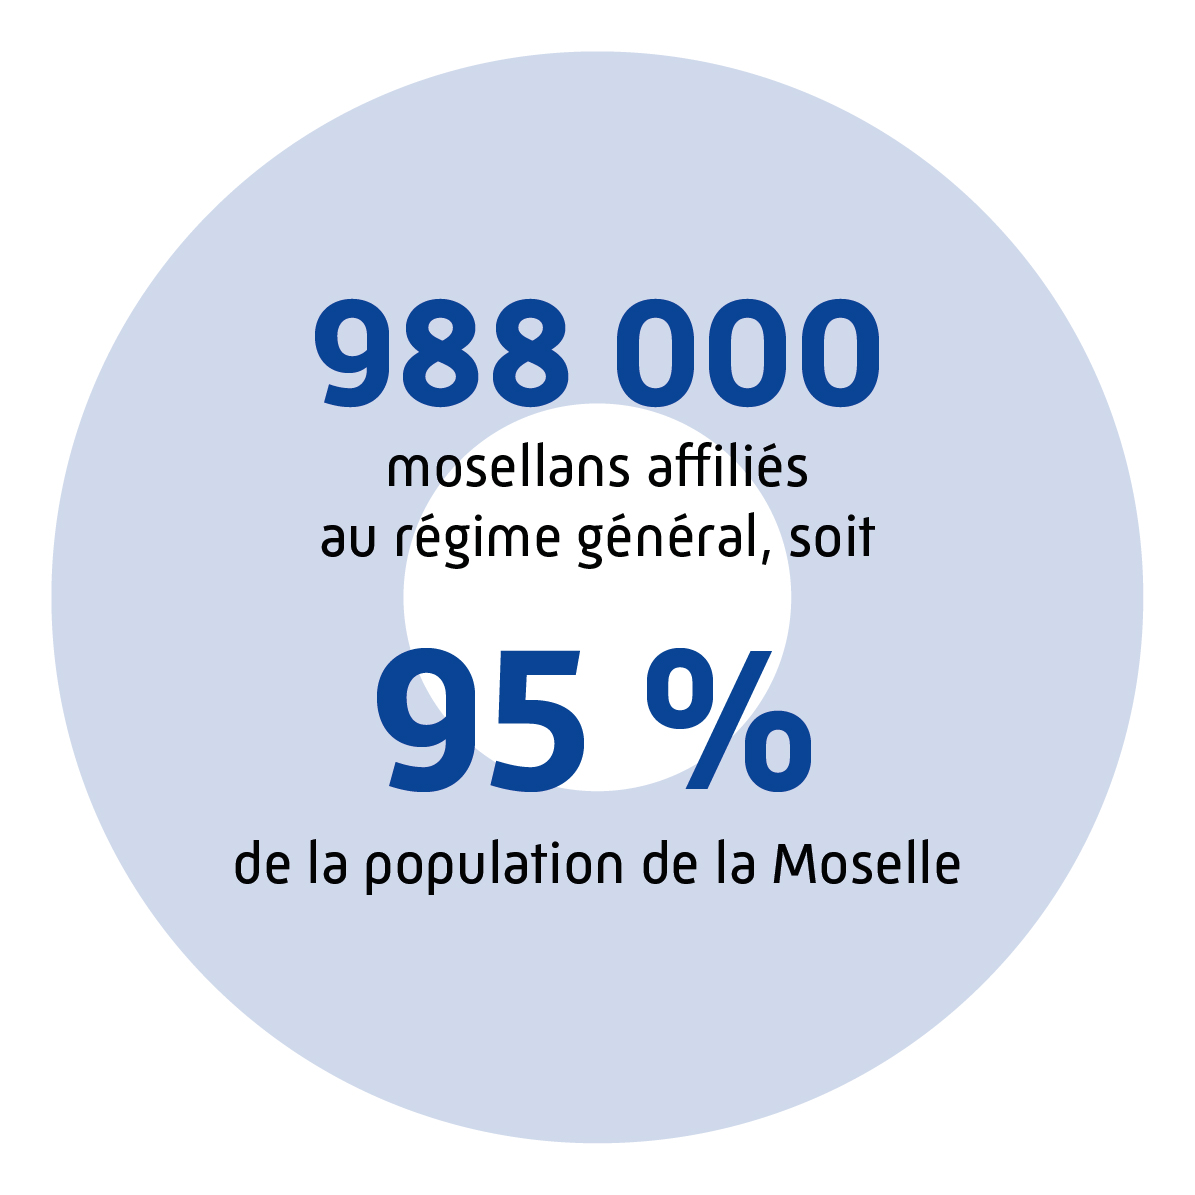 988 000 mosellans affiliés au régime général, soit 95 % de la population de la Moselle.